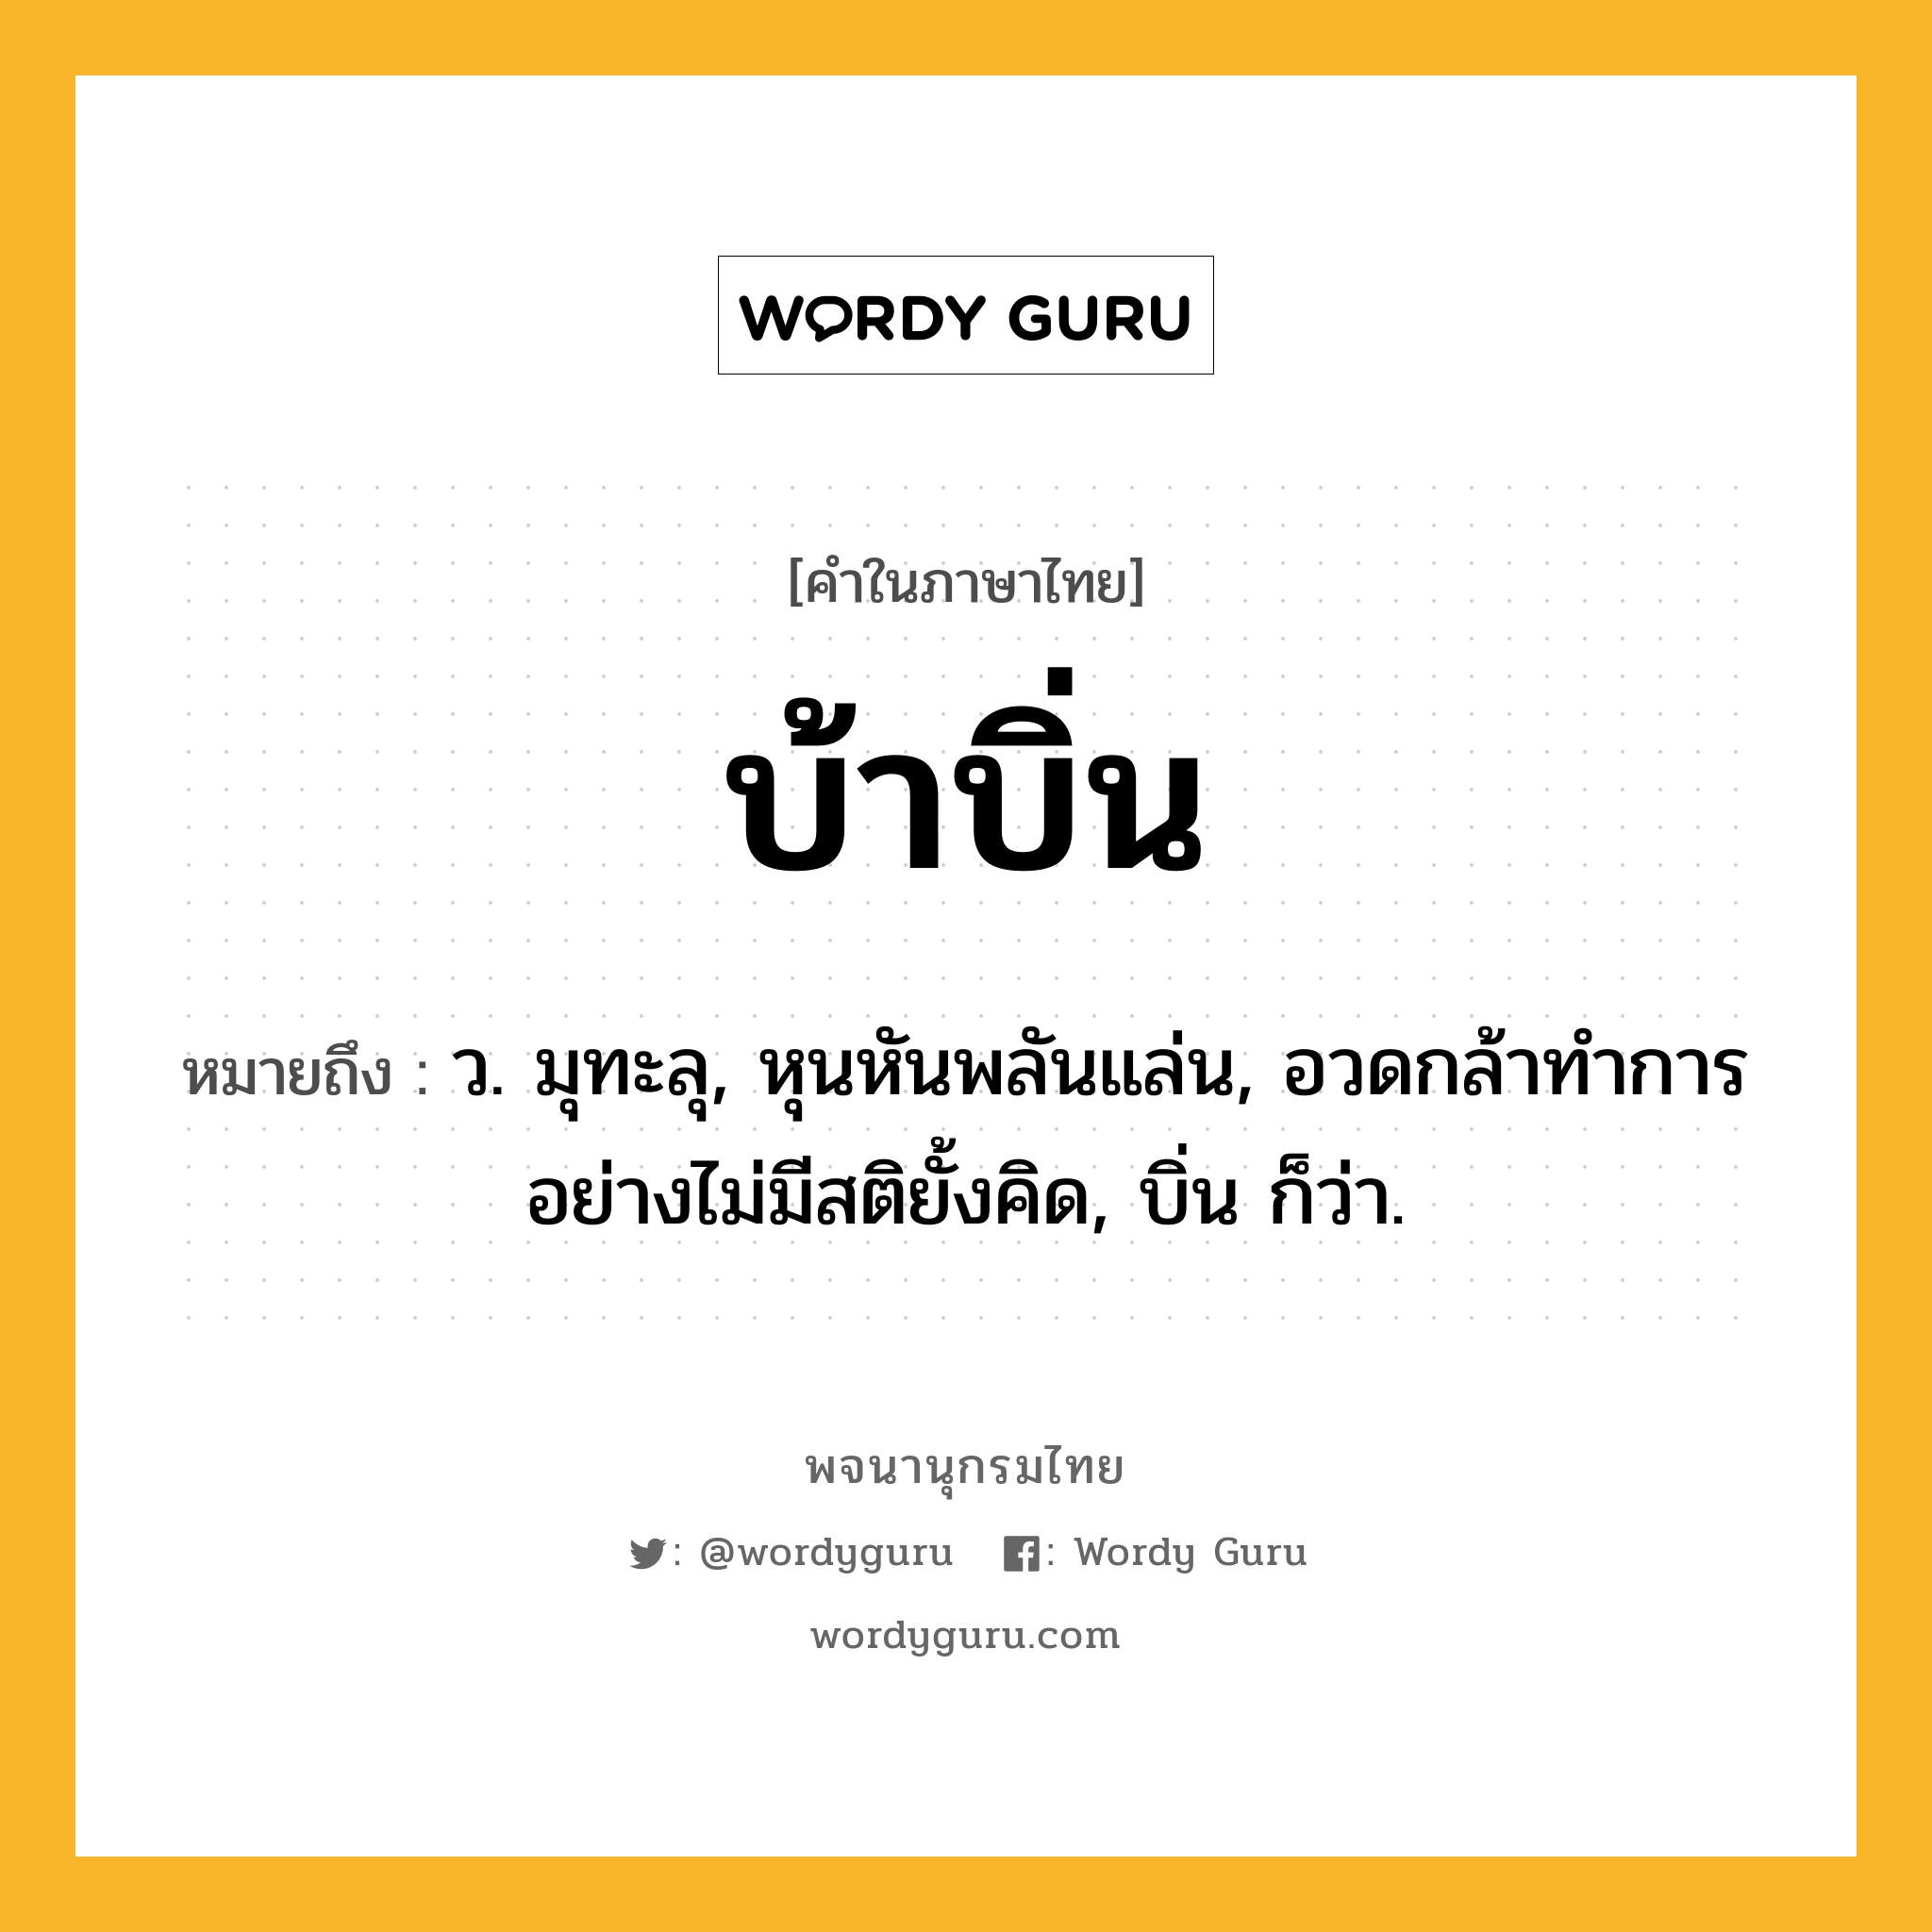 บ้าบิ่น ความหมาย หมายถึงอะไร?, คำในภาษาไทย บ้าบิ่น หมายถึง ว. มุทะลุ, หุนหันพลันแล่น, อวดกล้าทําการอย่างไม่มีสติยั้งคิด, บิ่น ก็ว่า.